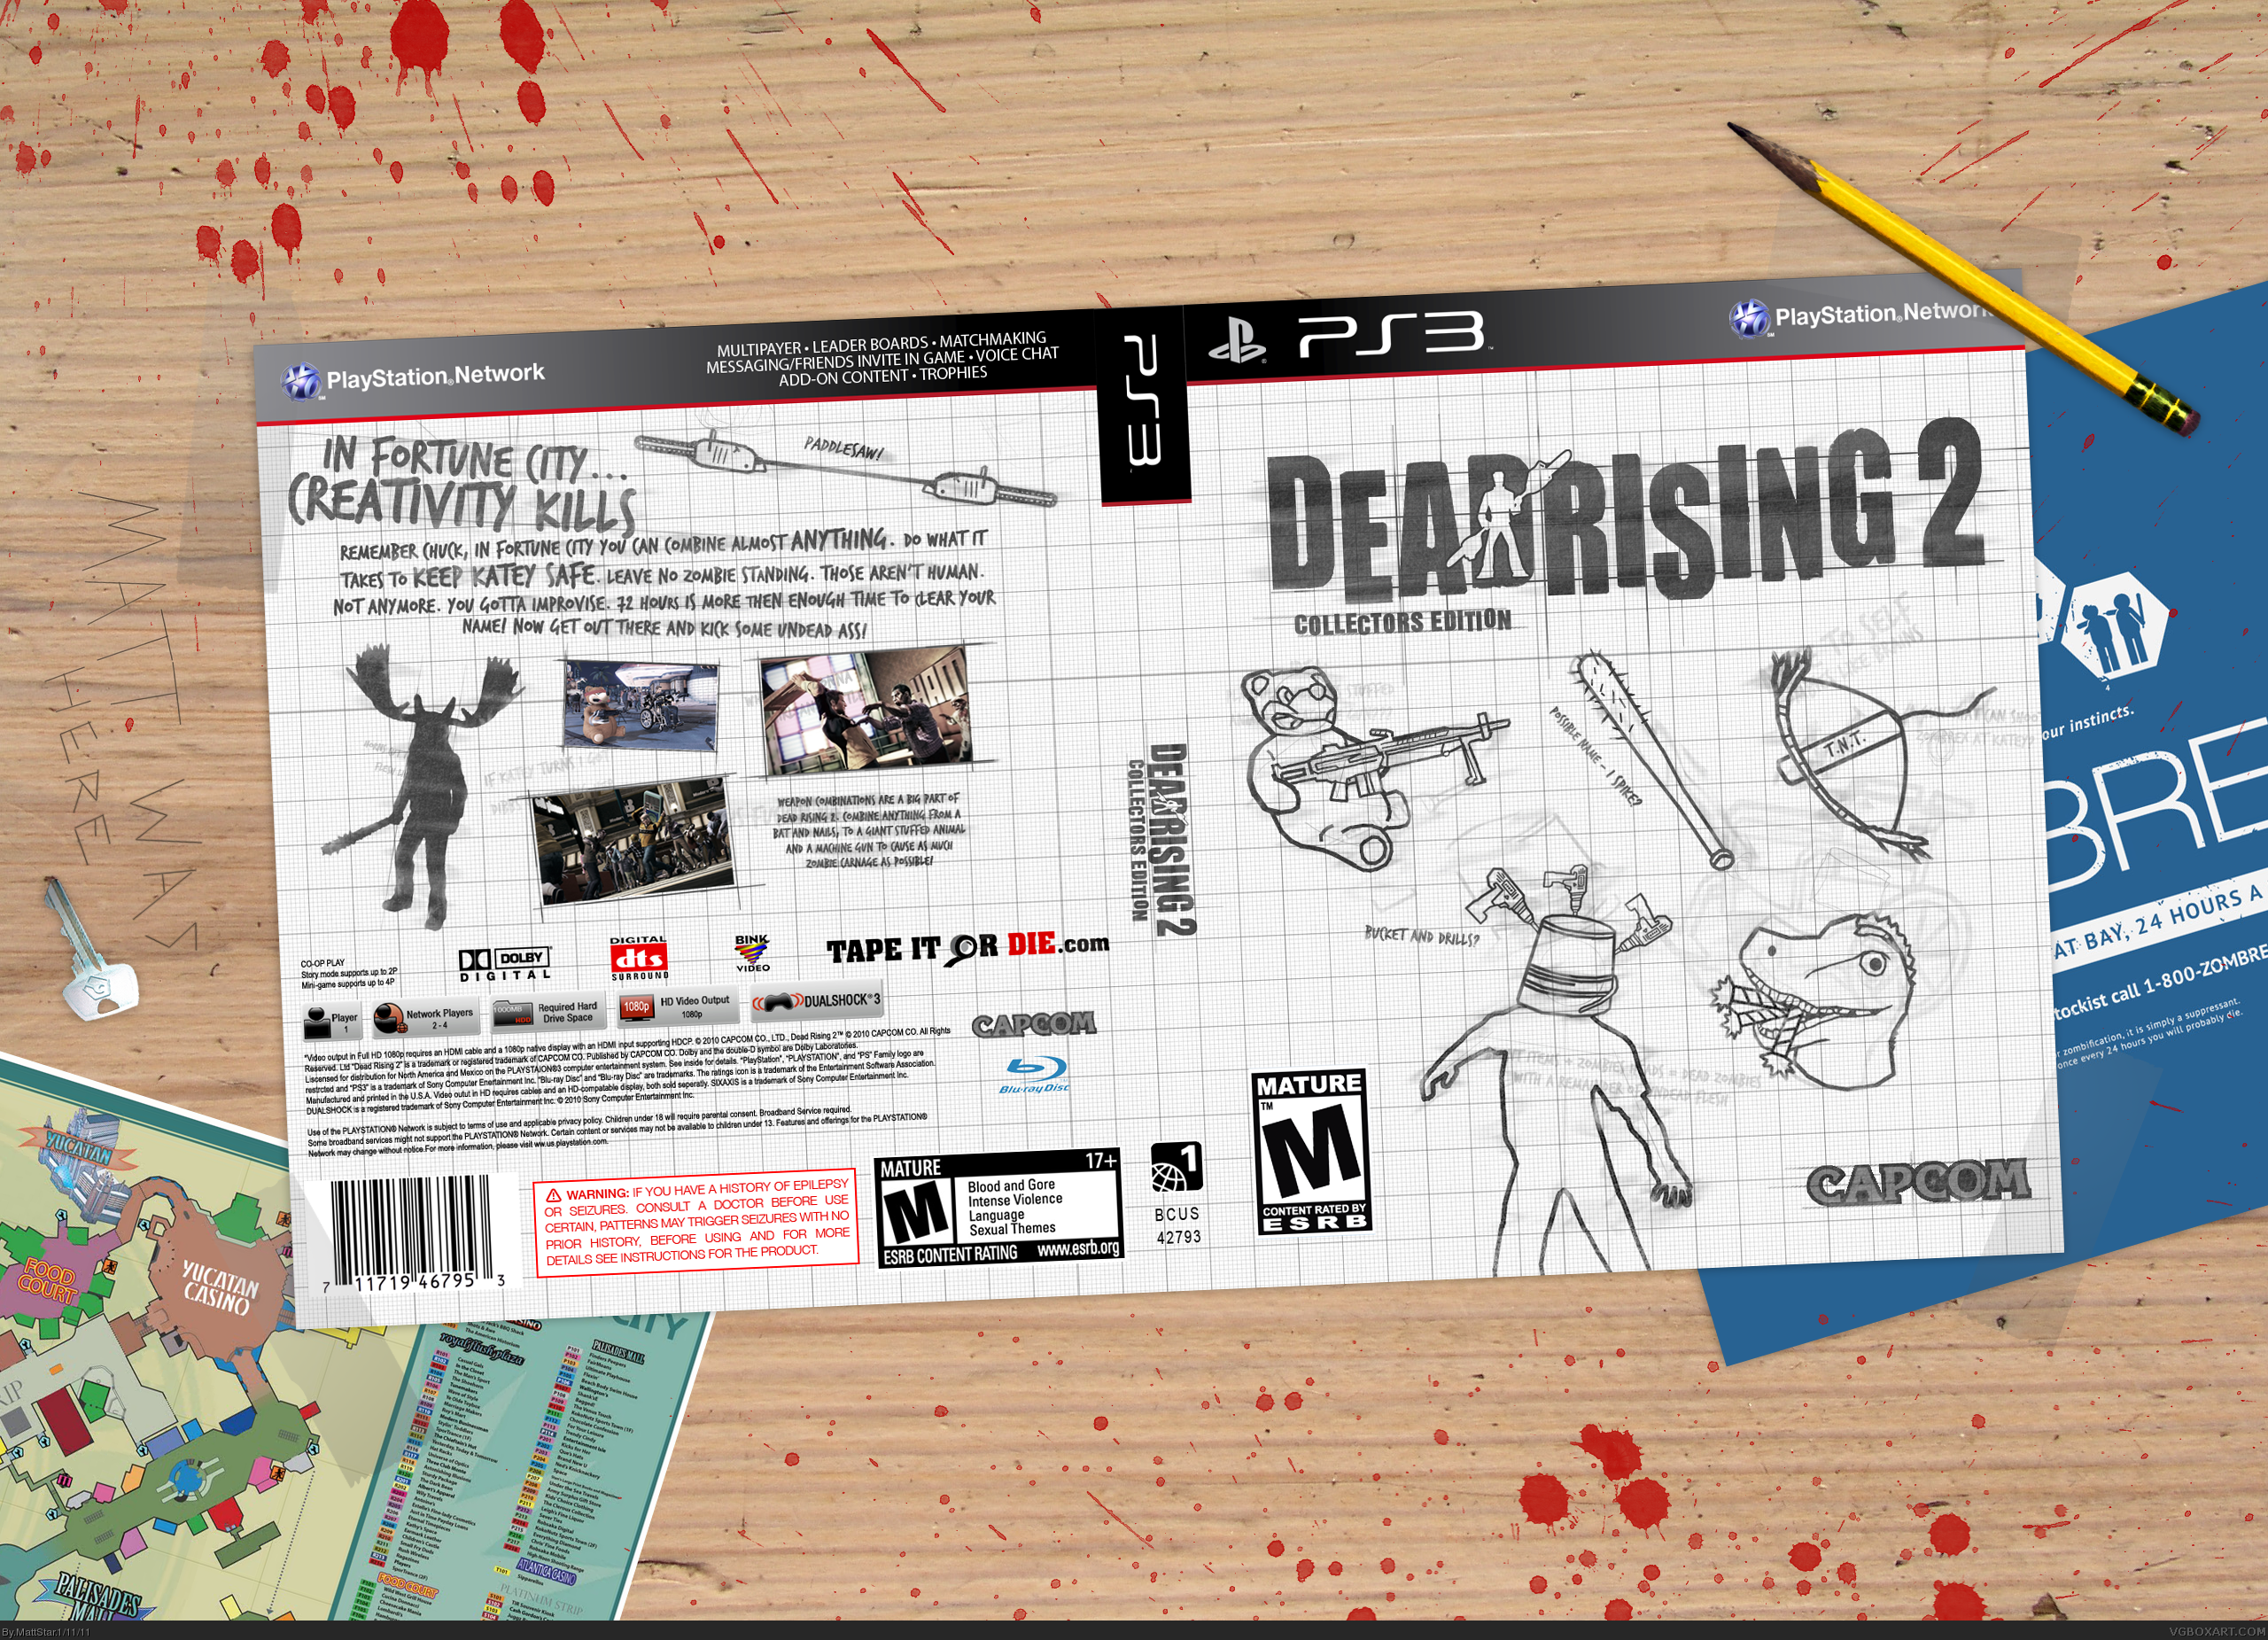 Dead Rising 2 Collectors Edition box cover